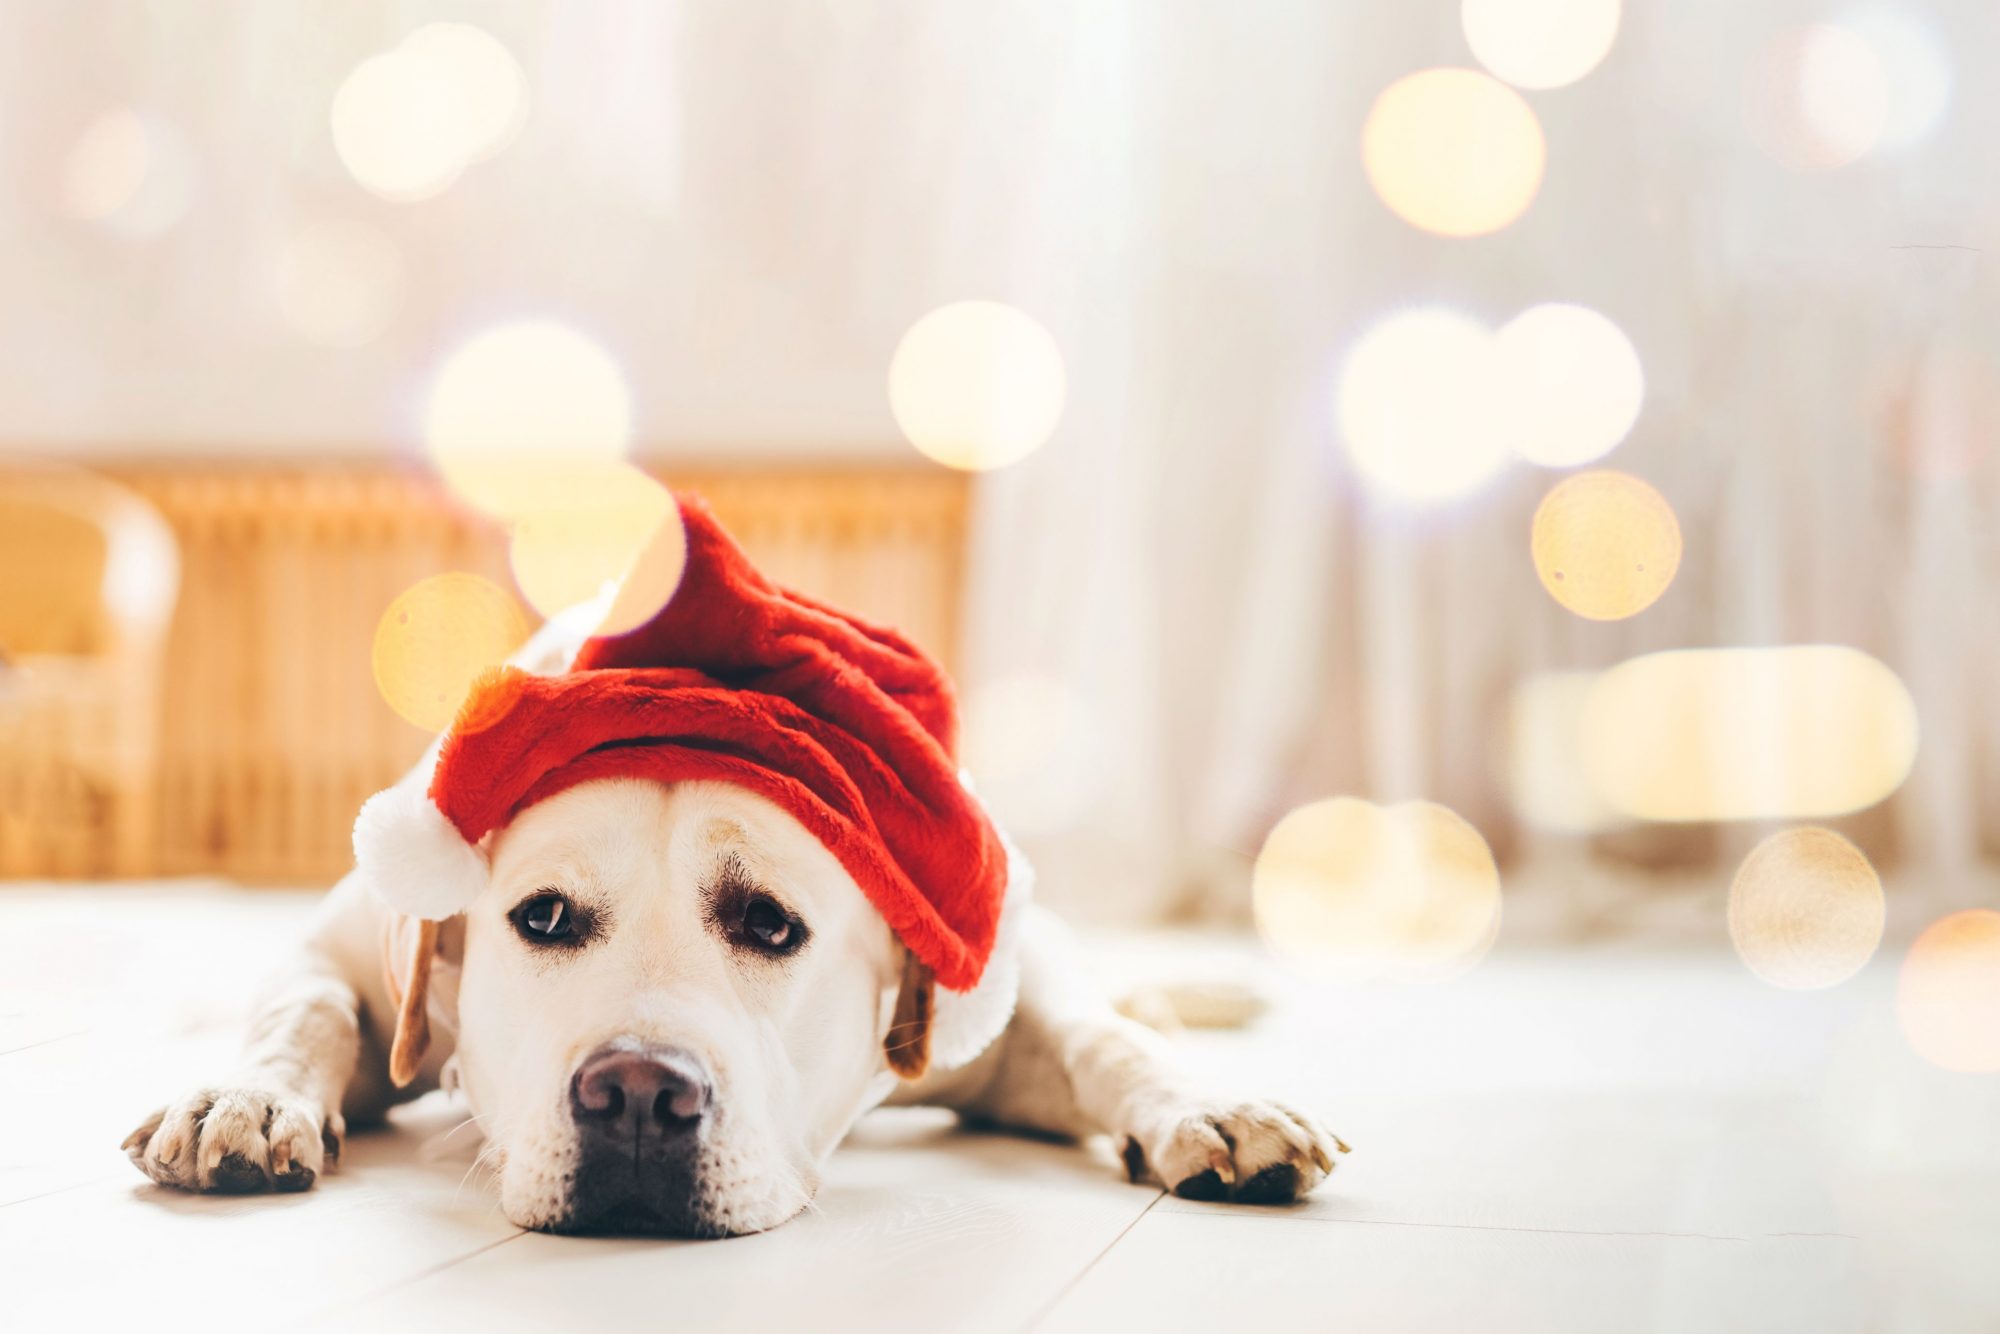 Sad dog in Santa hat.